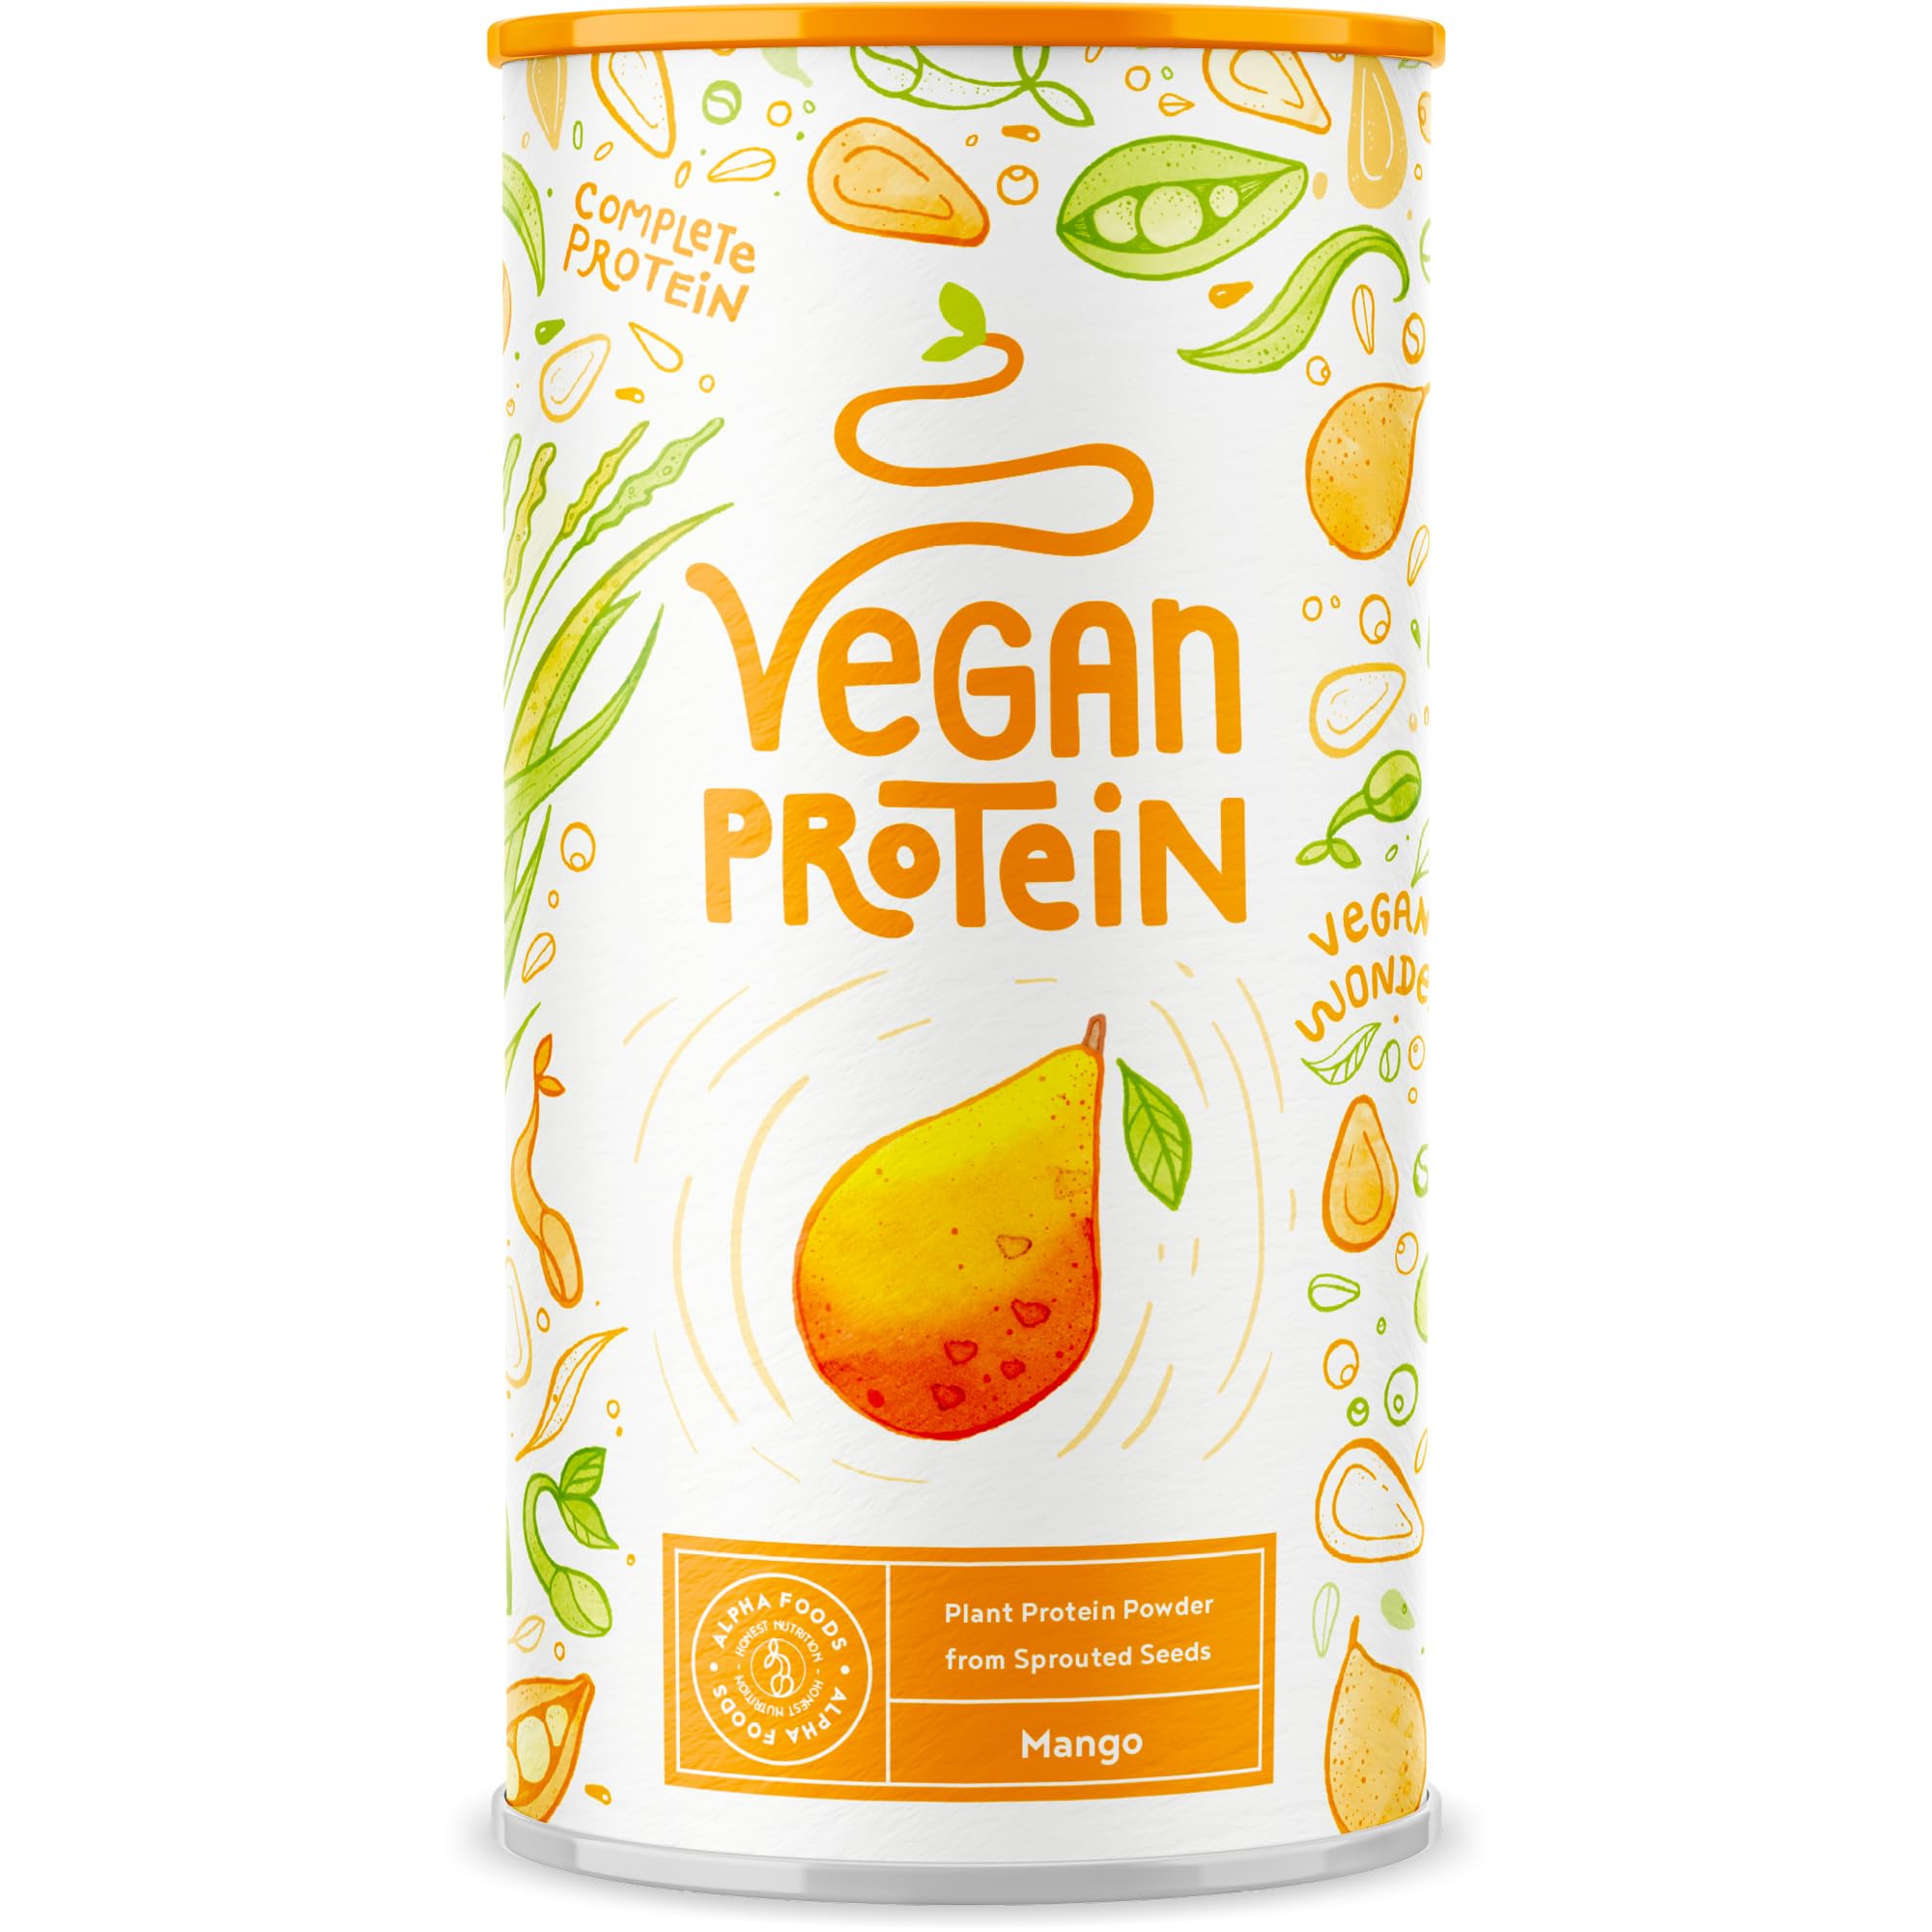 Vegan Protein - MANGO - Pflanzliches Proteinpulver aus gesprosstem Reis und Erbsen - 75% Eiweißanteil - 23g Protein pro Portion - 600 Gramm Pulver